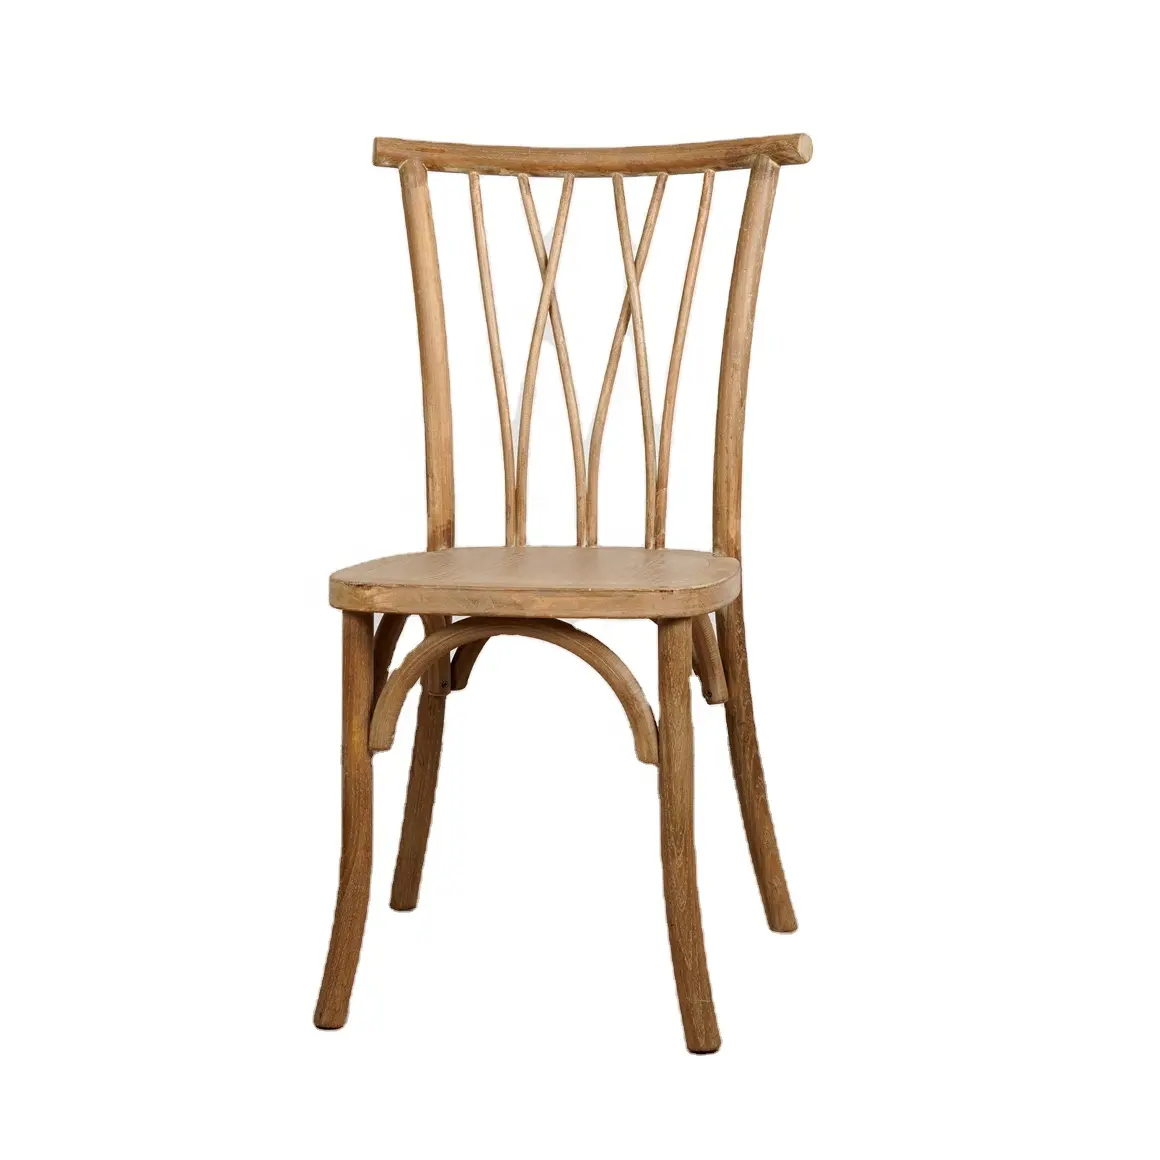 เก้าอี้ห้องรับประทานอาหารขาเว้าหลังรูปตัว X,เก้าอี้ไม้สำหรับซ้อนซ้อนกันได้เก้าอี้ห้องรับประทานอาหารแบบ Crossback โบราณสำหรับงานจัดเลี้ยง